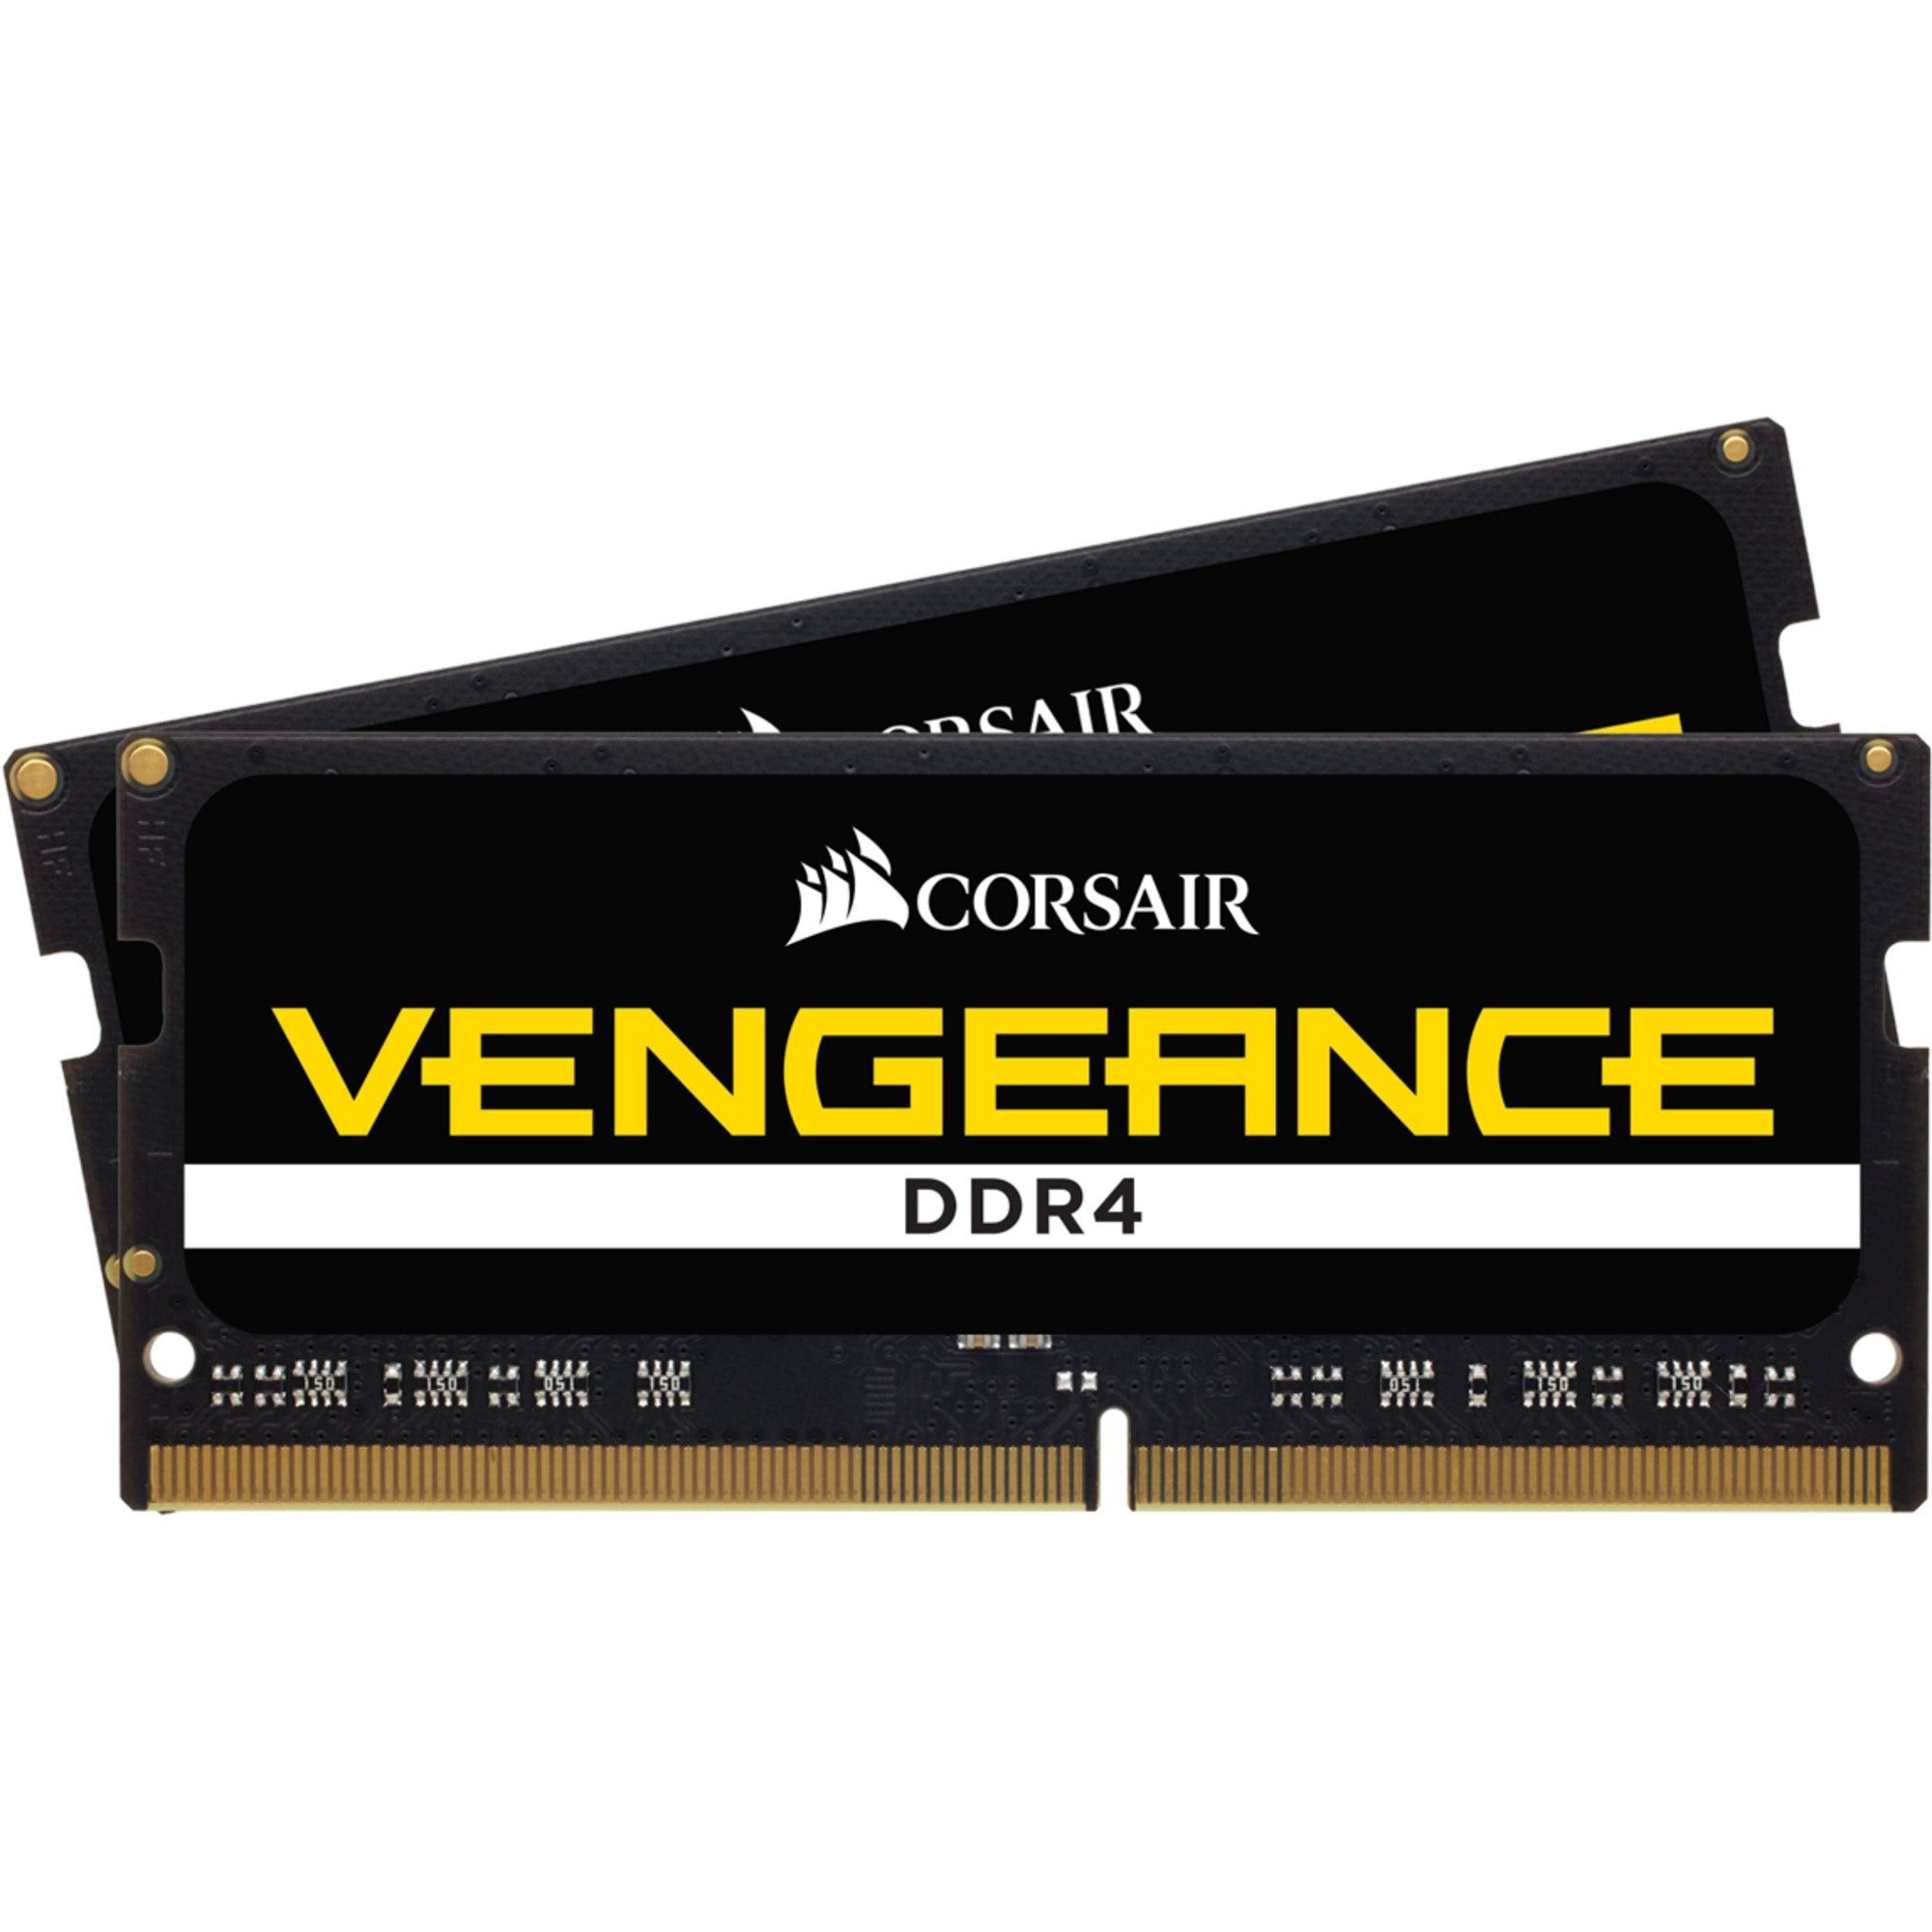 Arbeitsspeicher »Vengeance DDR4 3200MHz SODIMM 32GB (2x16GB)«